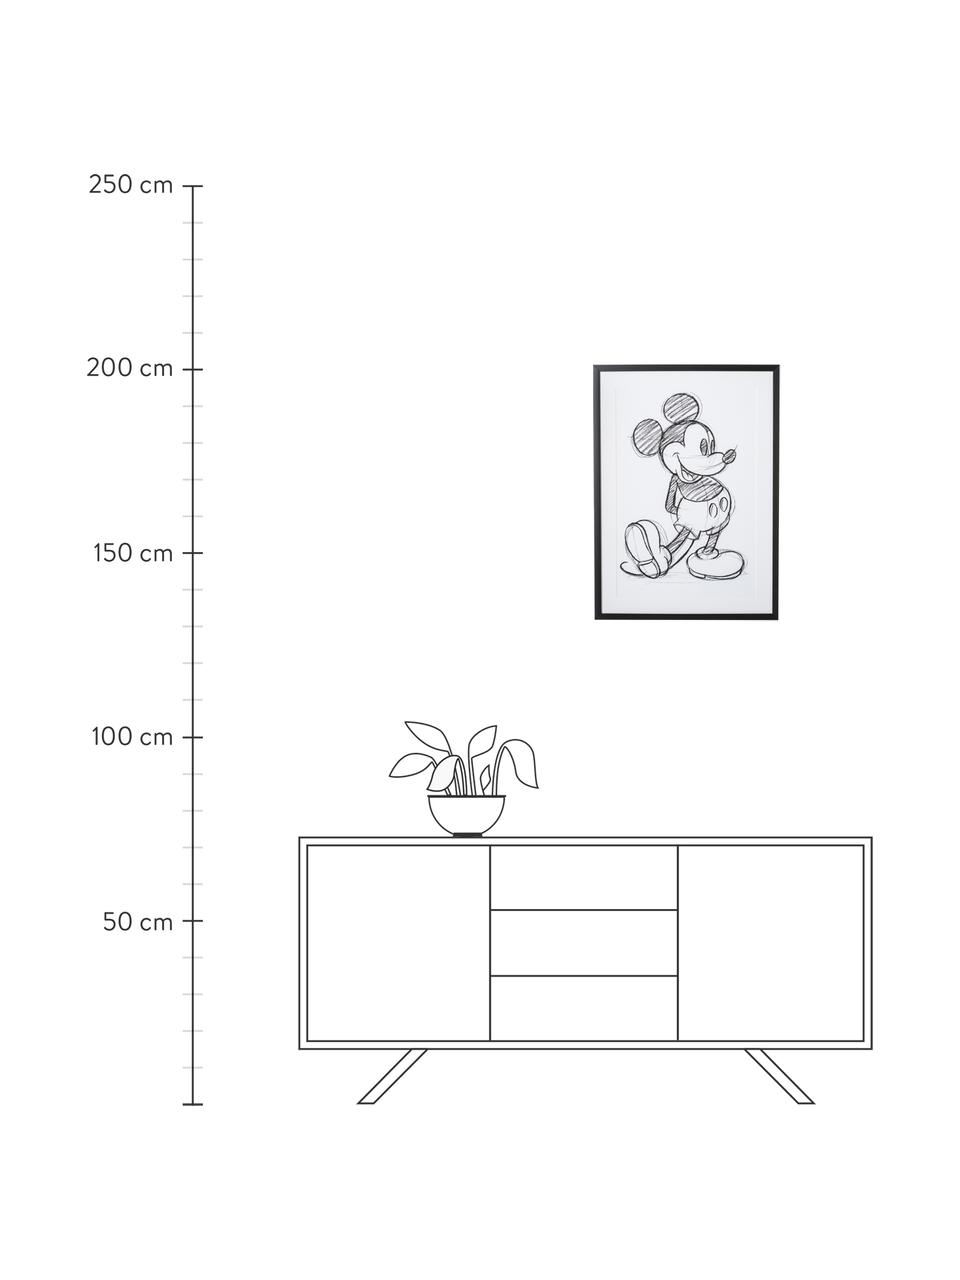 Impression numérique encadrée Mickey, Blanc, noir, larg. 50 x haut. 70 cm